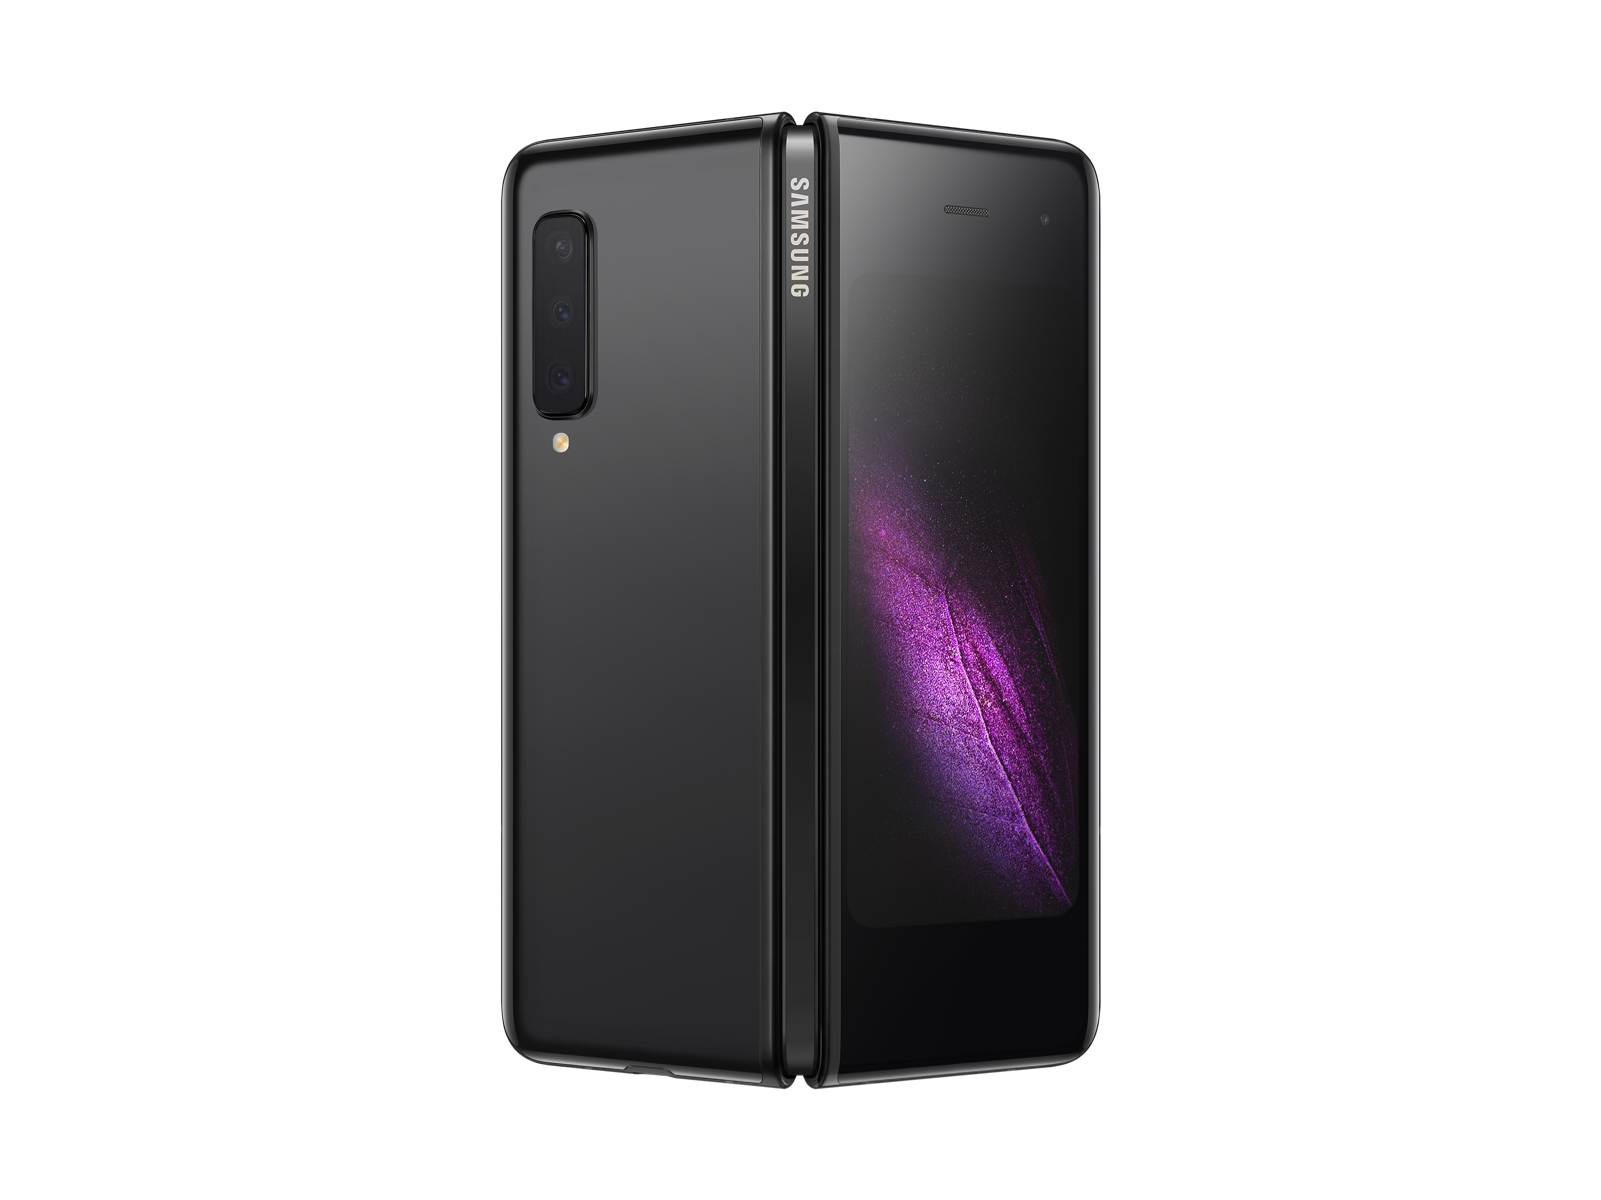 スマートフォン/携帯電話 携帯電話本体 Galaxy Fold 512GB (Unlocked) Phones - SM-F900UZKDXAA | Samsung US